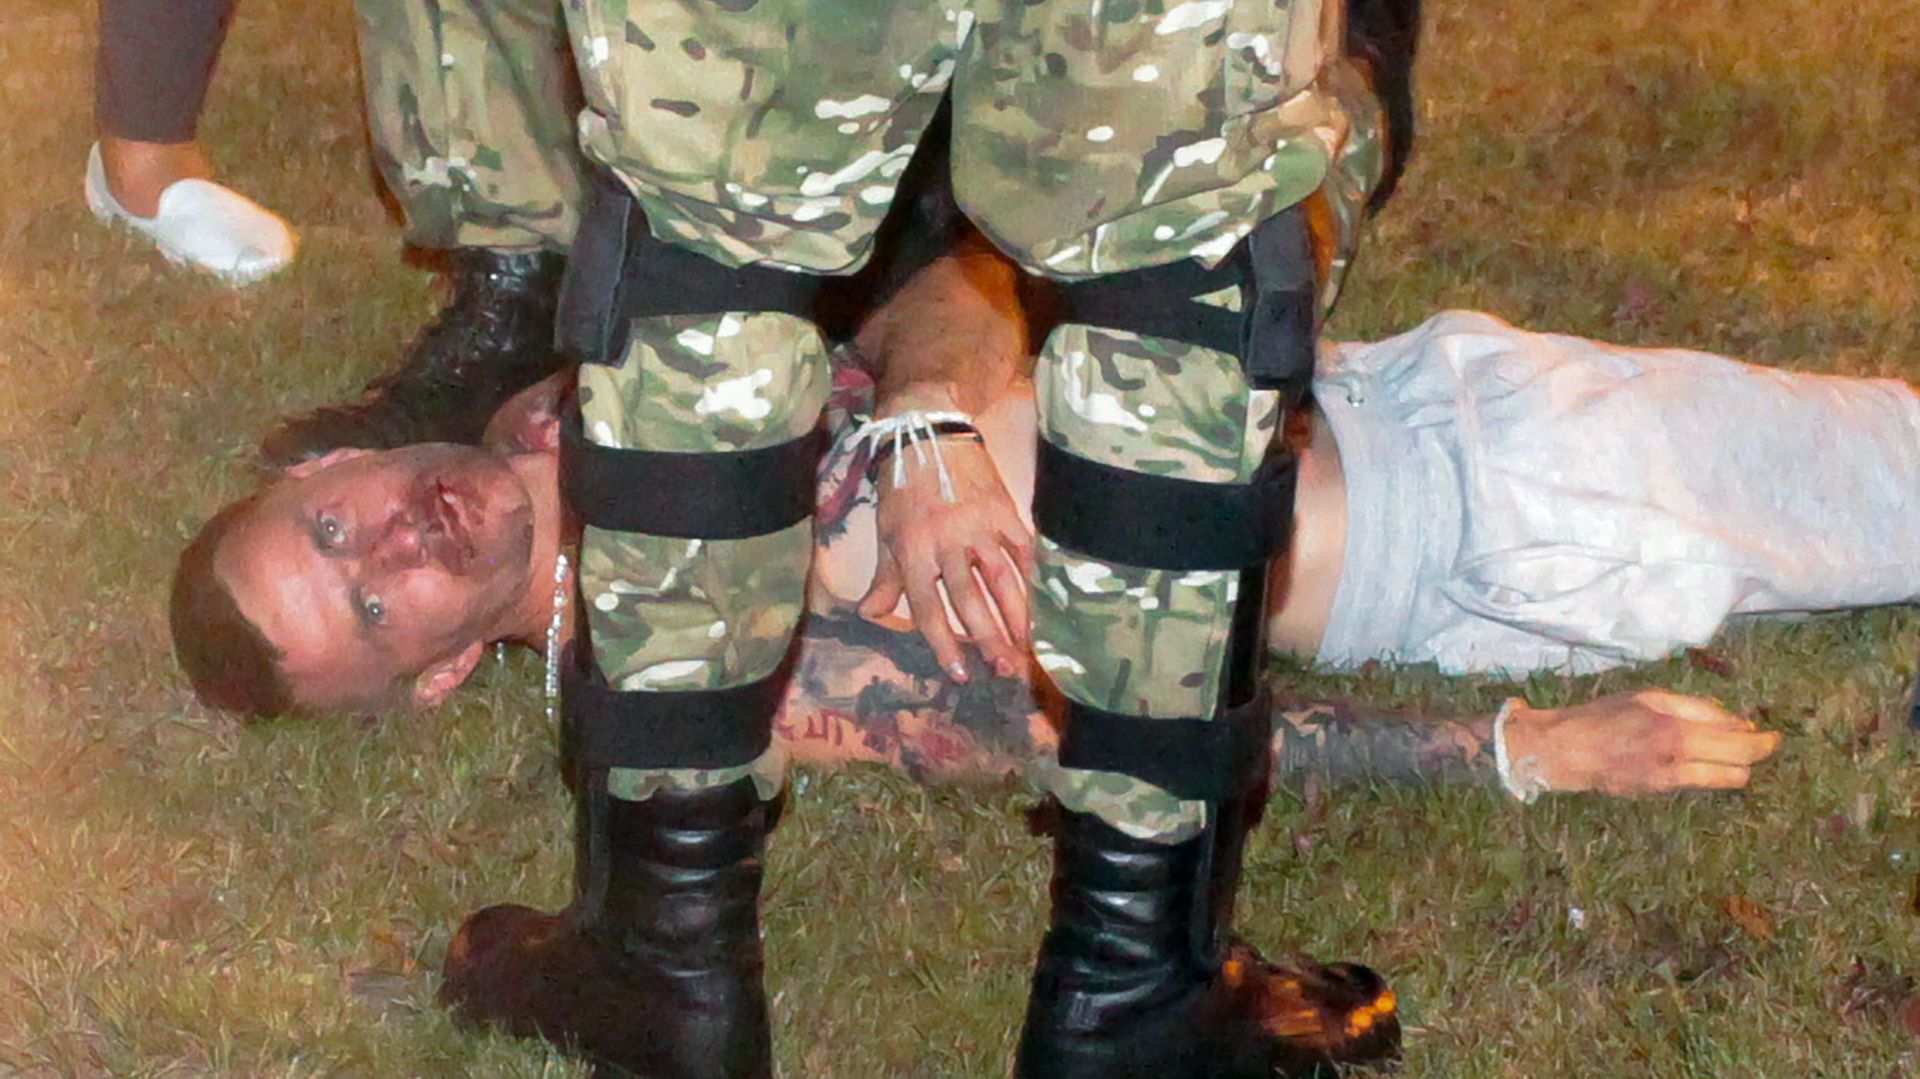 Un manifestant blessé est maintenu au sol par la police après la fermeture des bureaux de vote à Minsk le 9 août dernier